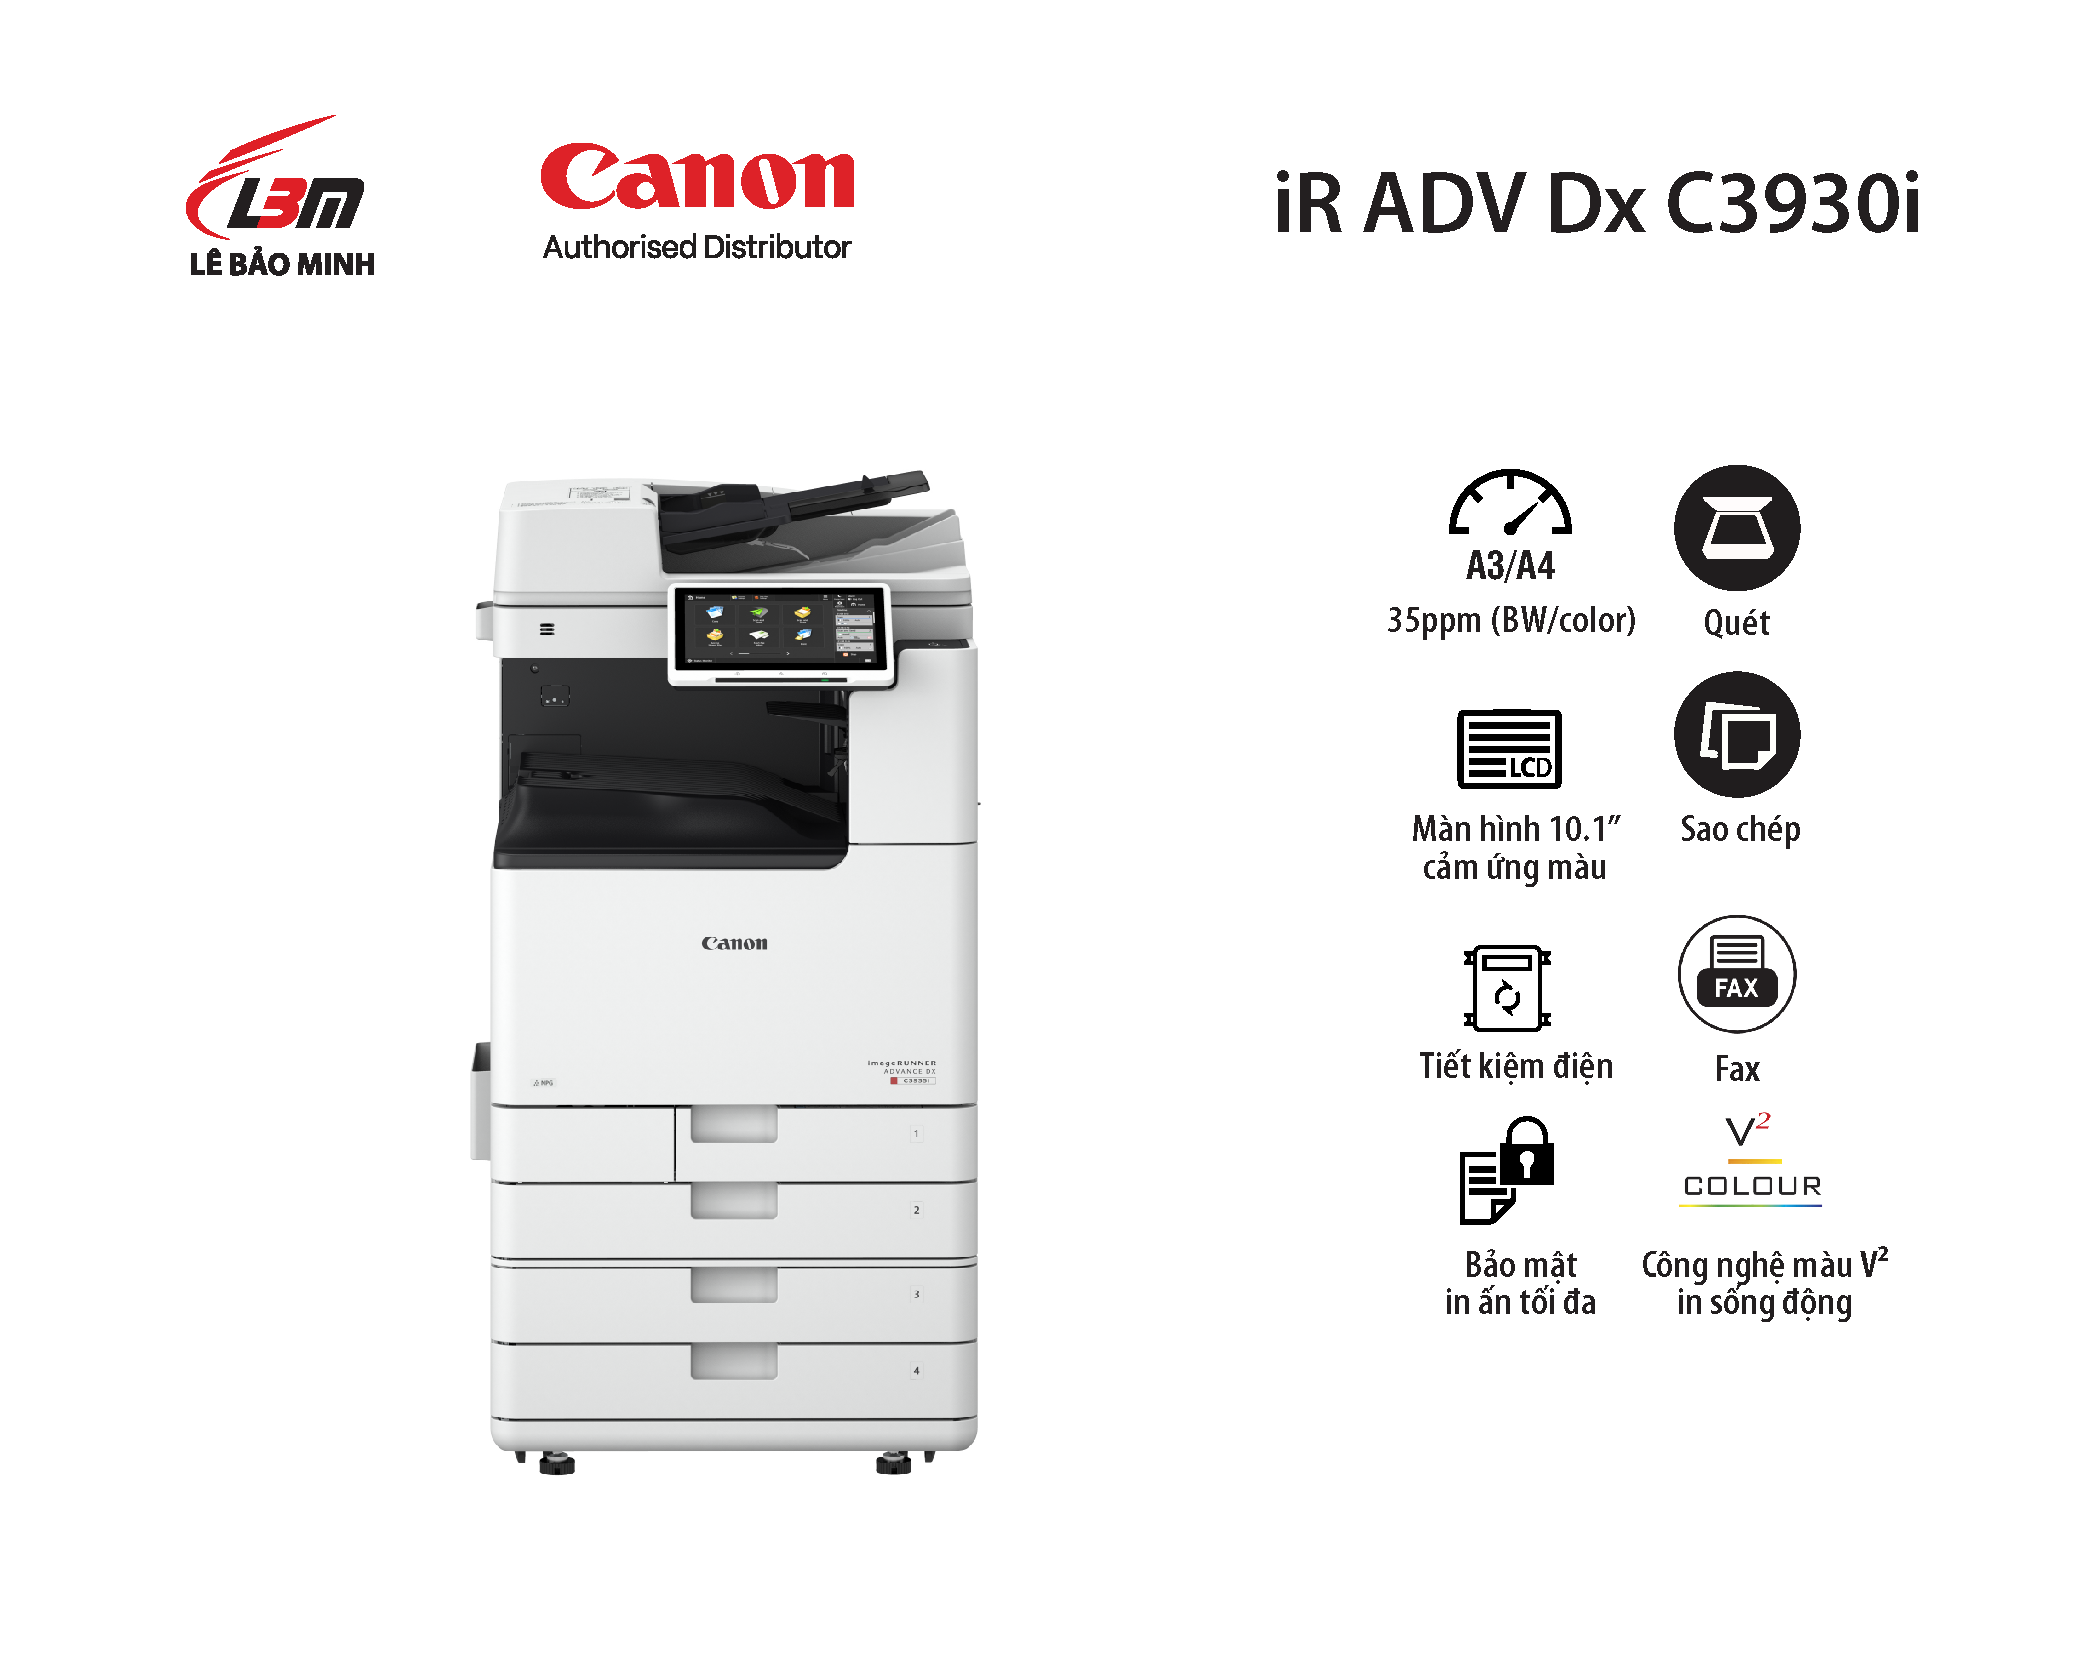 Photocopy iR-ADV DX C3930i